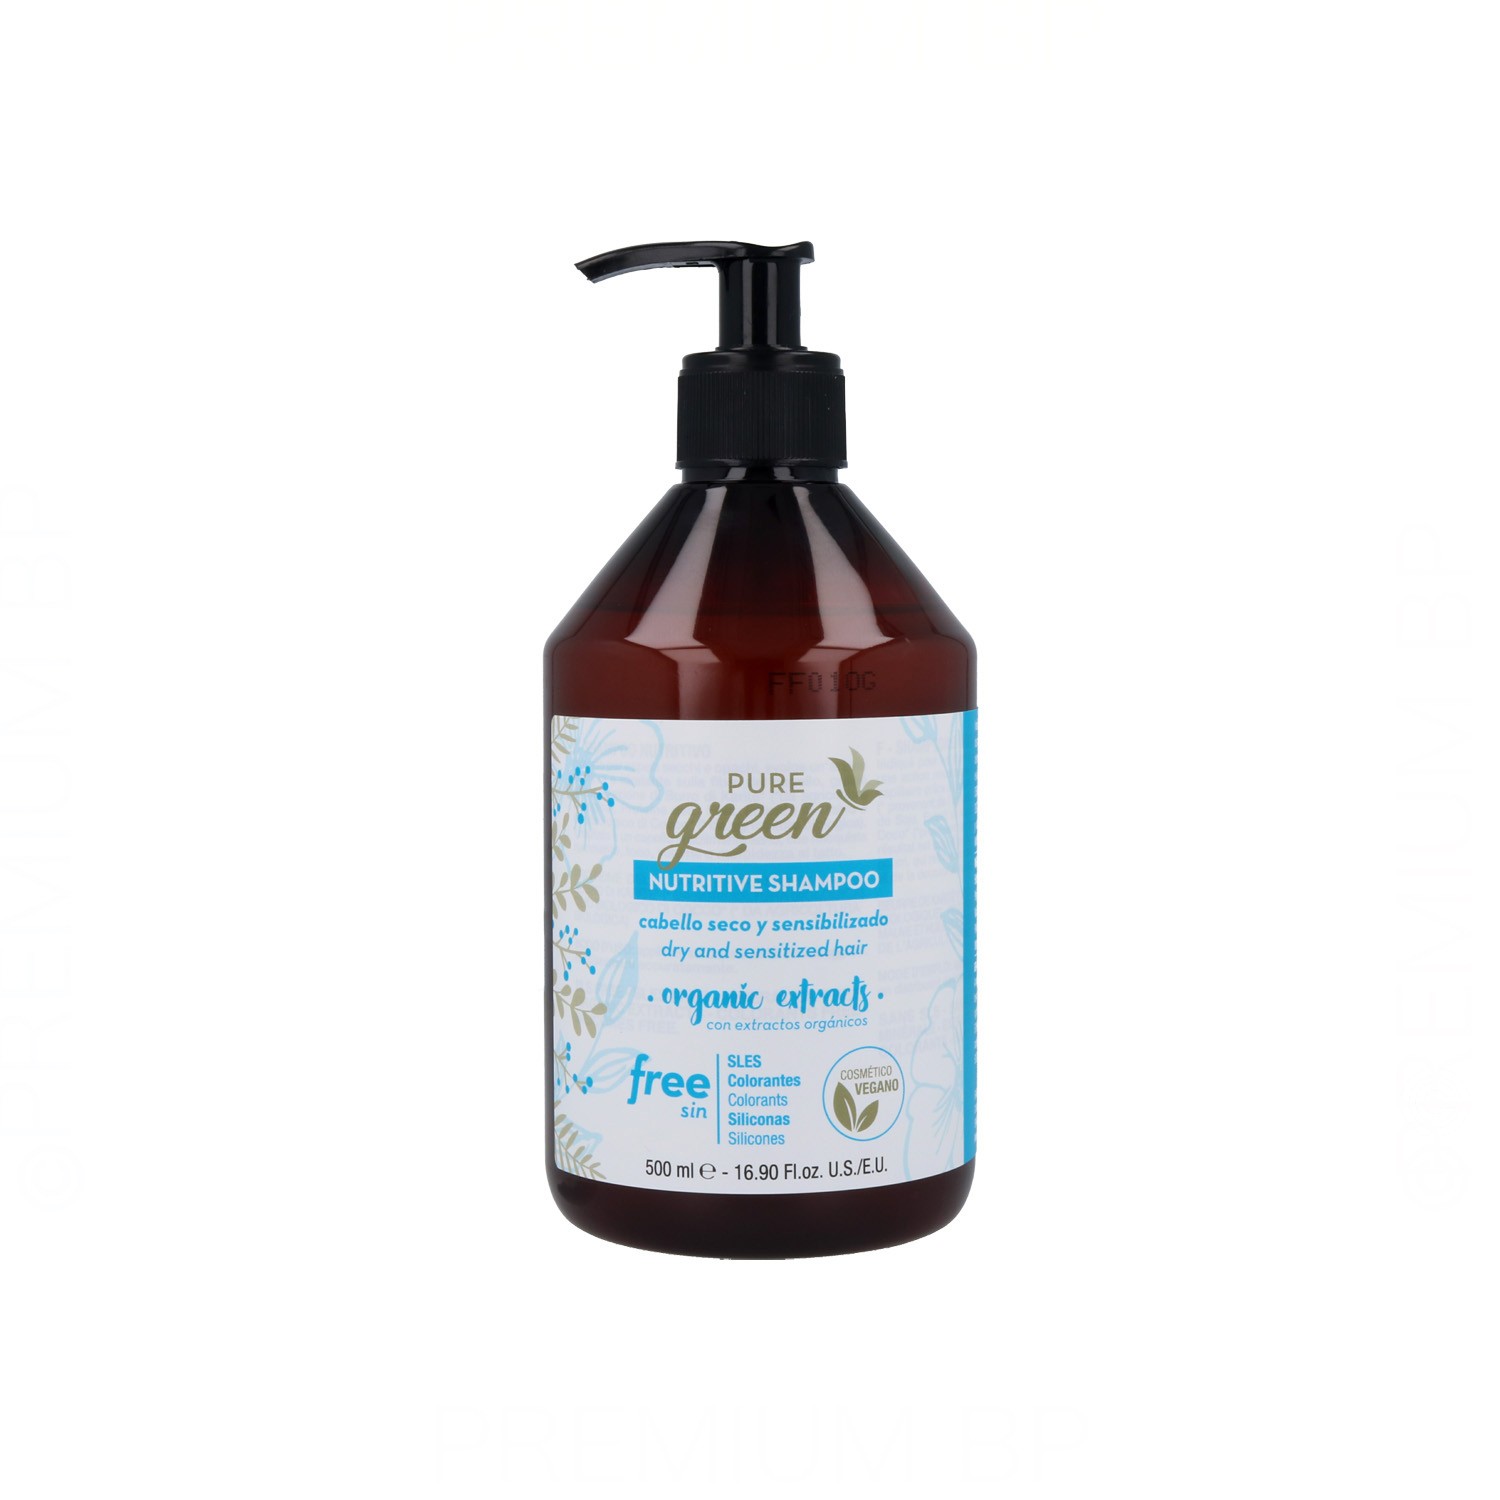 Pure Green Nutritive Shampoo 500 ml